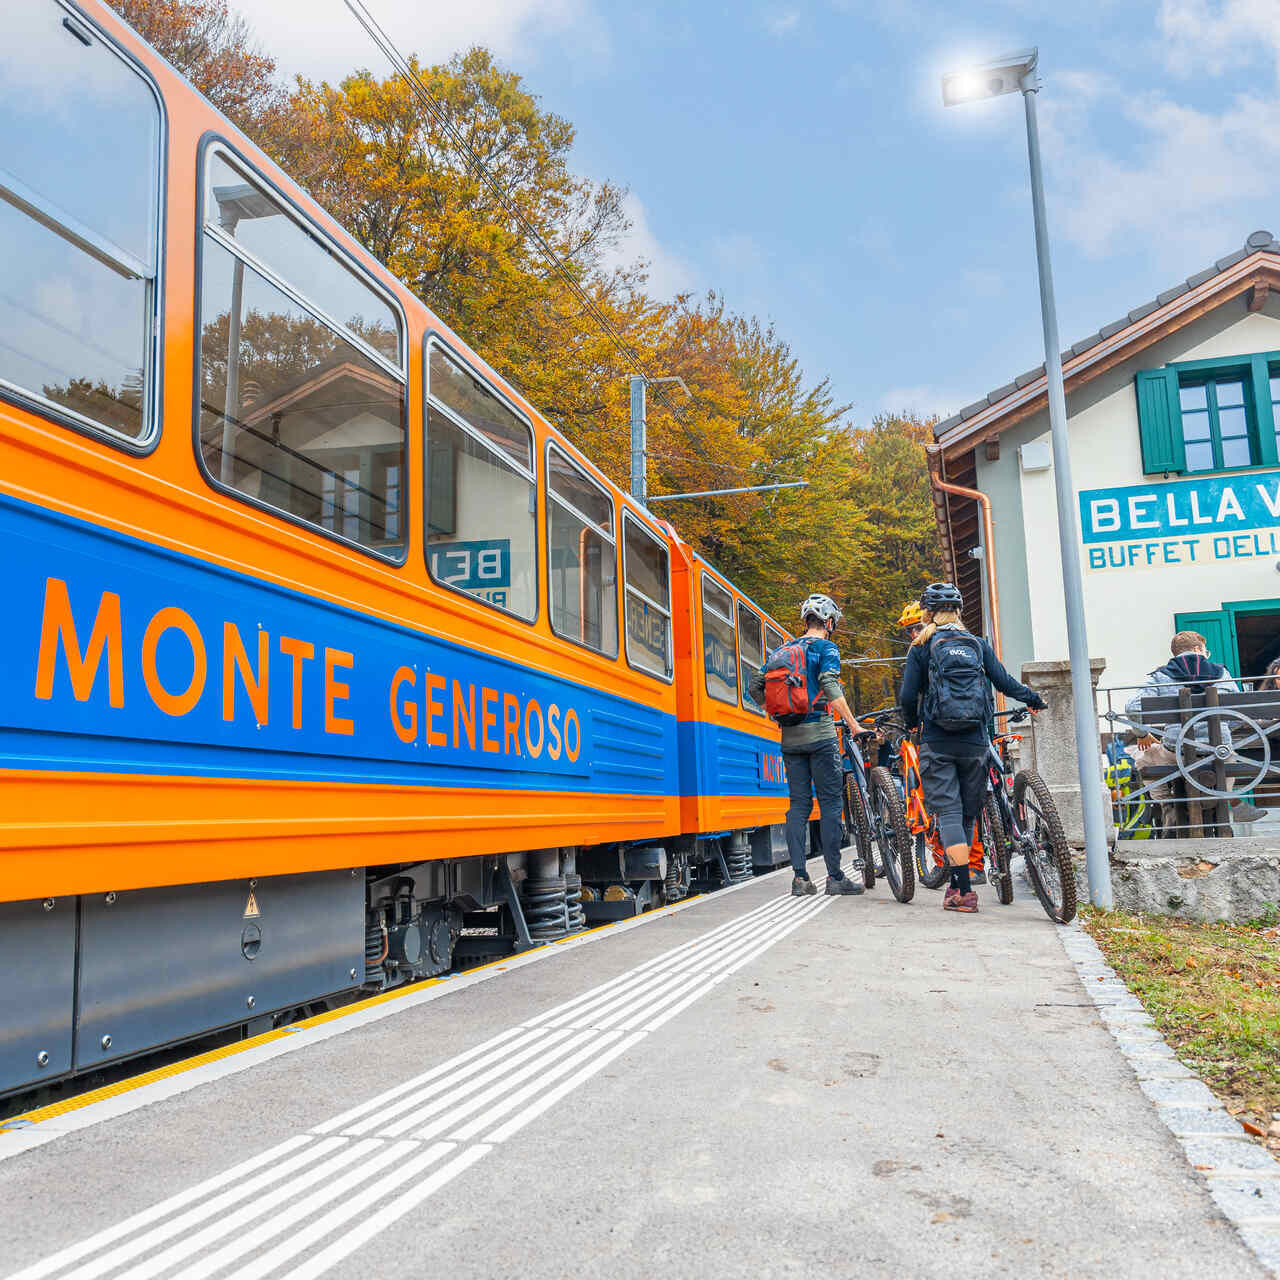 몬테 제네로소(Monte Generoso): 파란색과 주황색의 고전적인 철도 객차